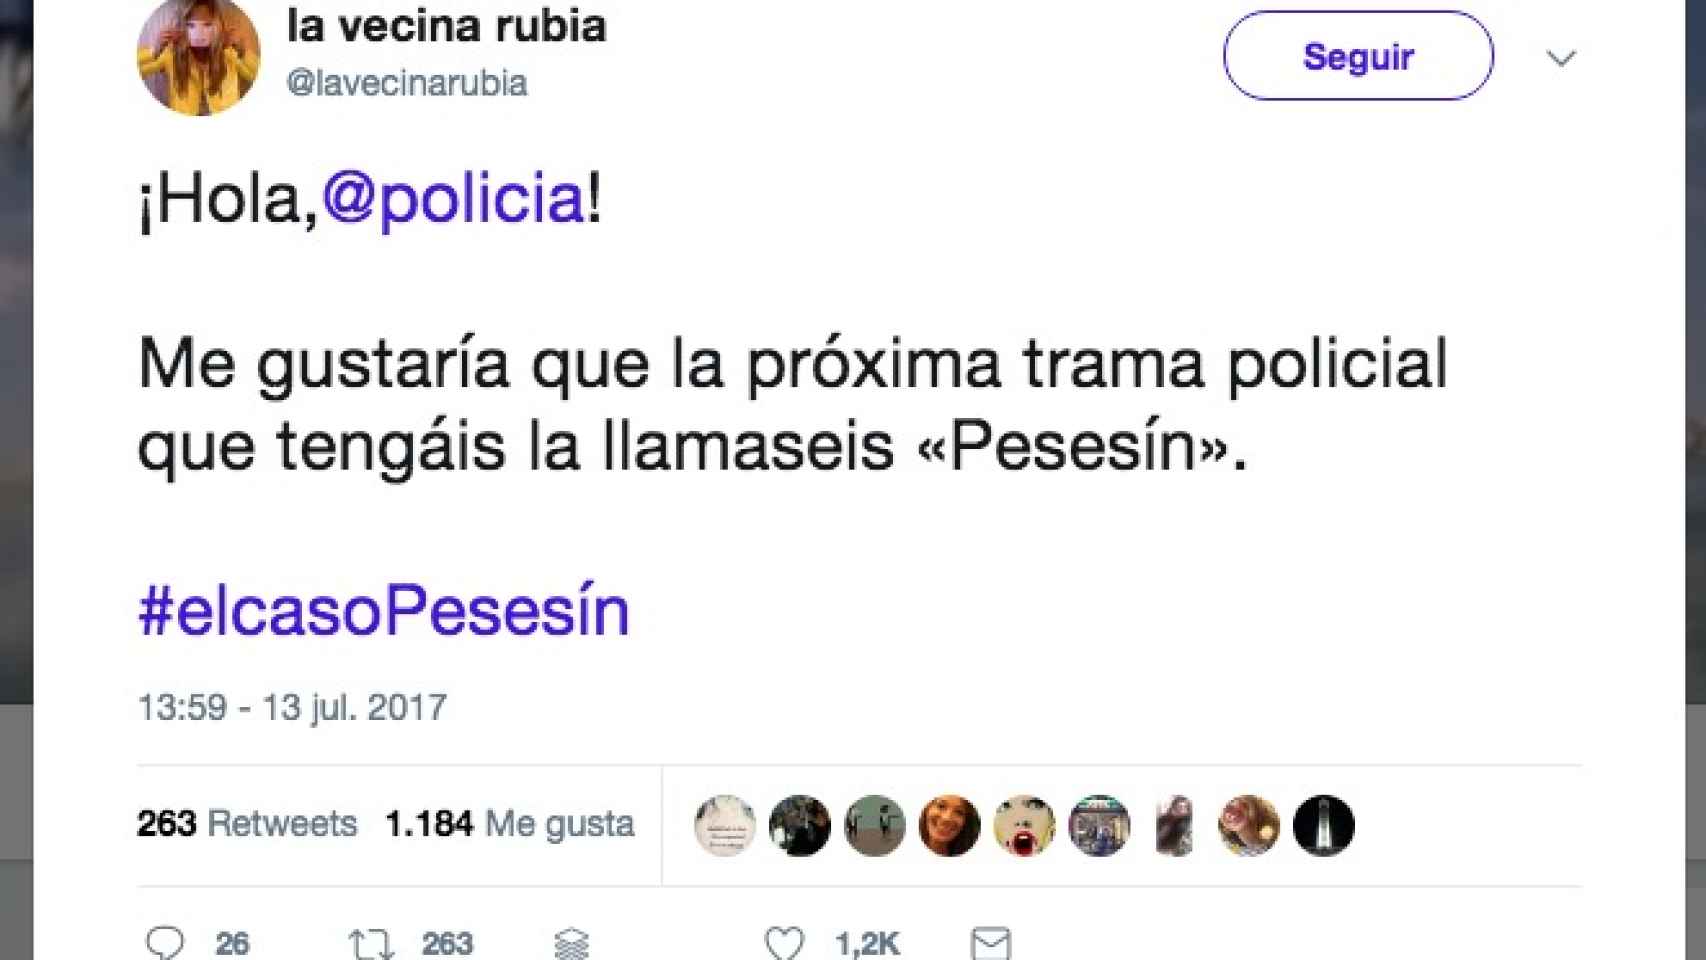 Operación Pesesin: La policía se compromete a bautizar su próxima investigación